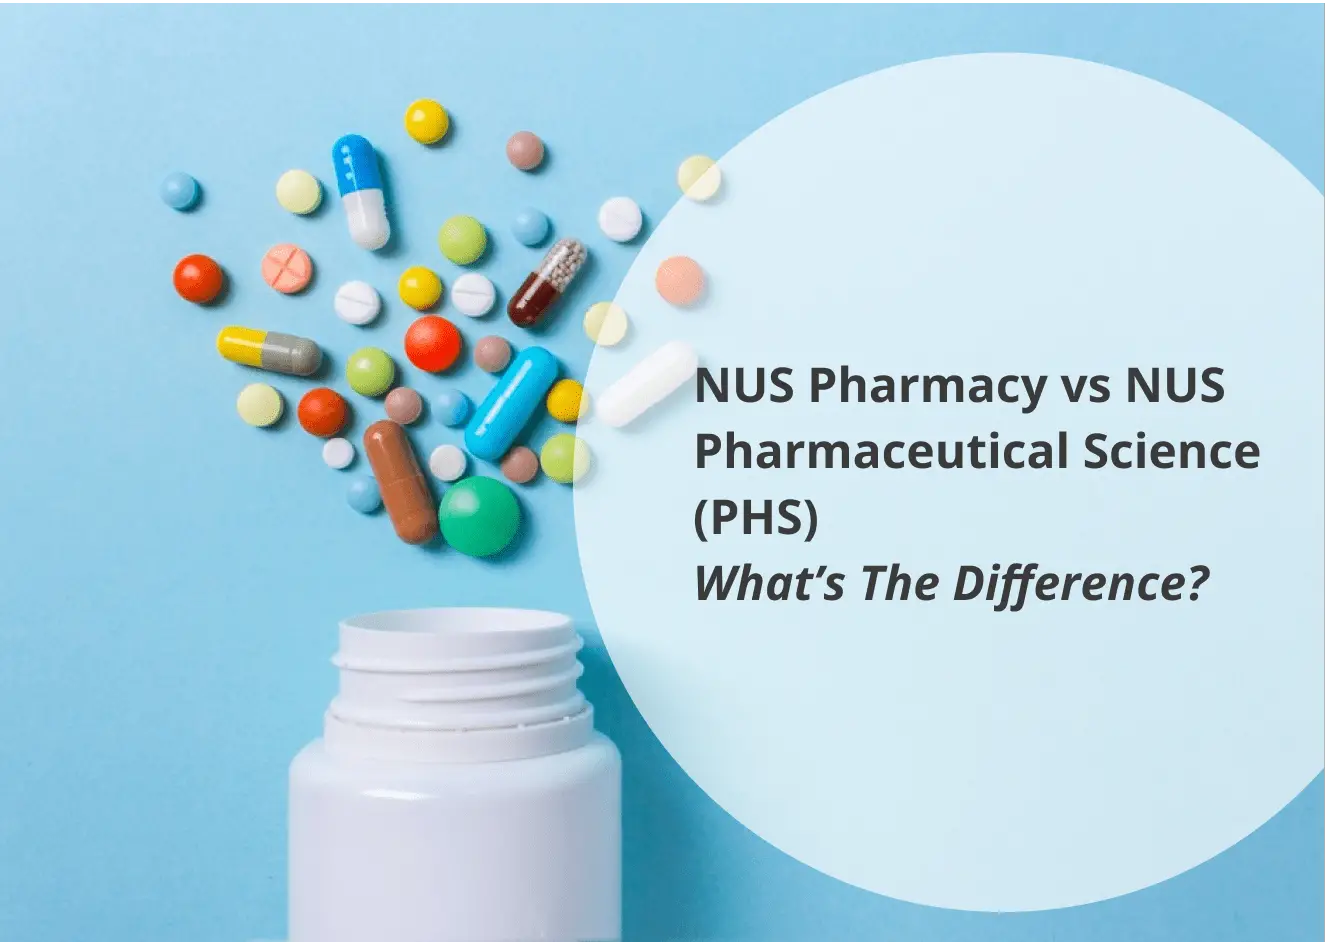 NUS Pharmacy vs NUS Pharmaceutical Science PHS